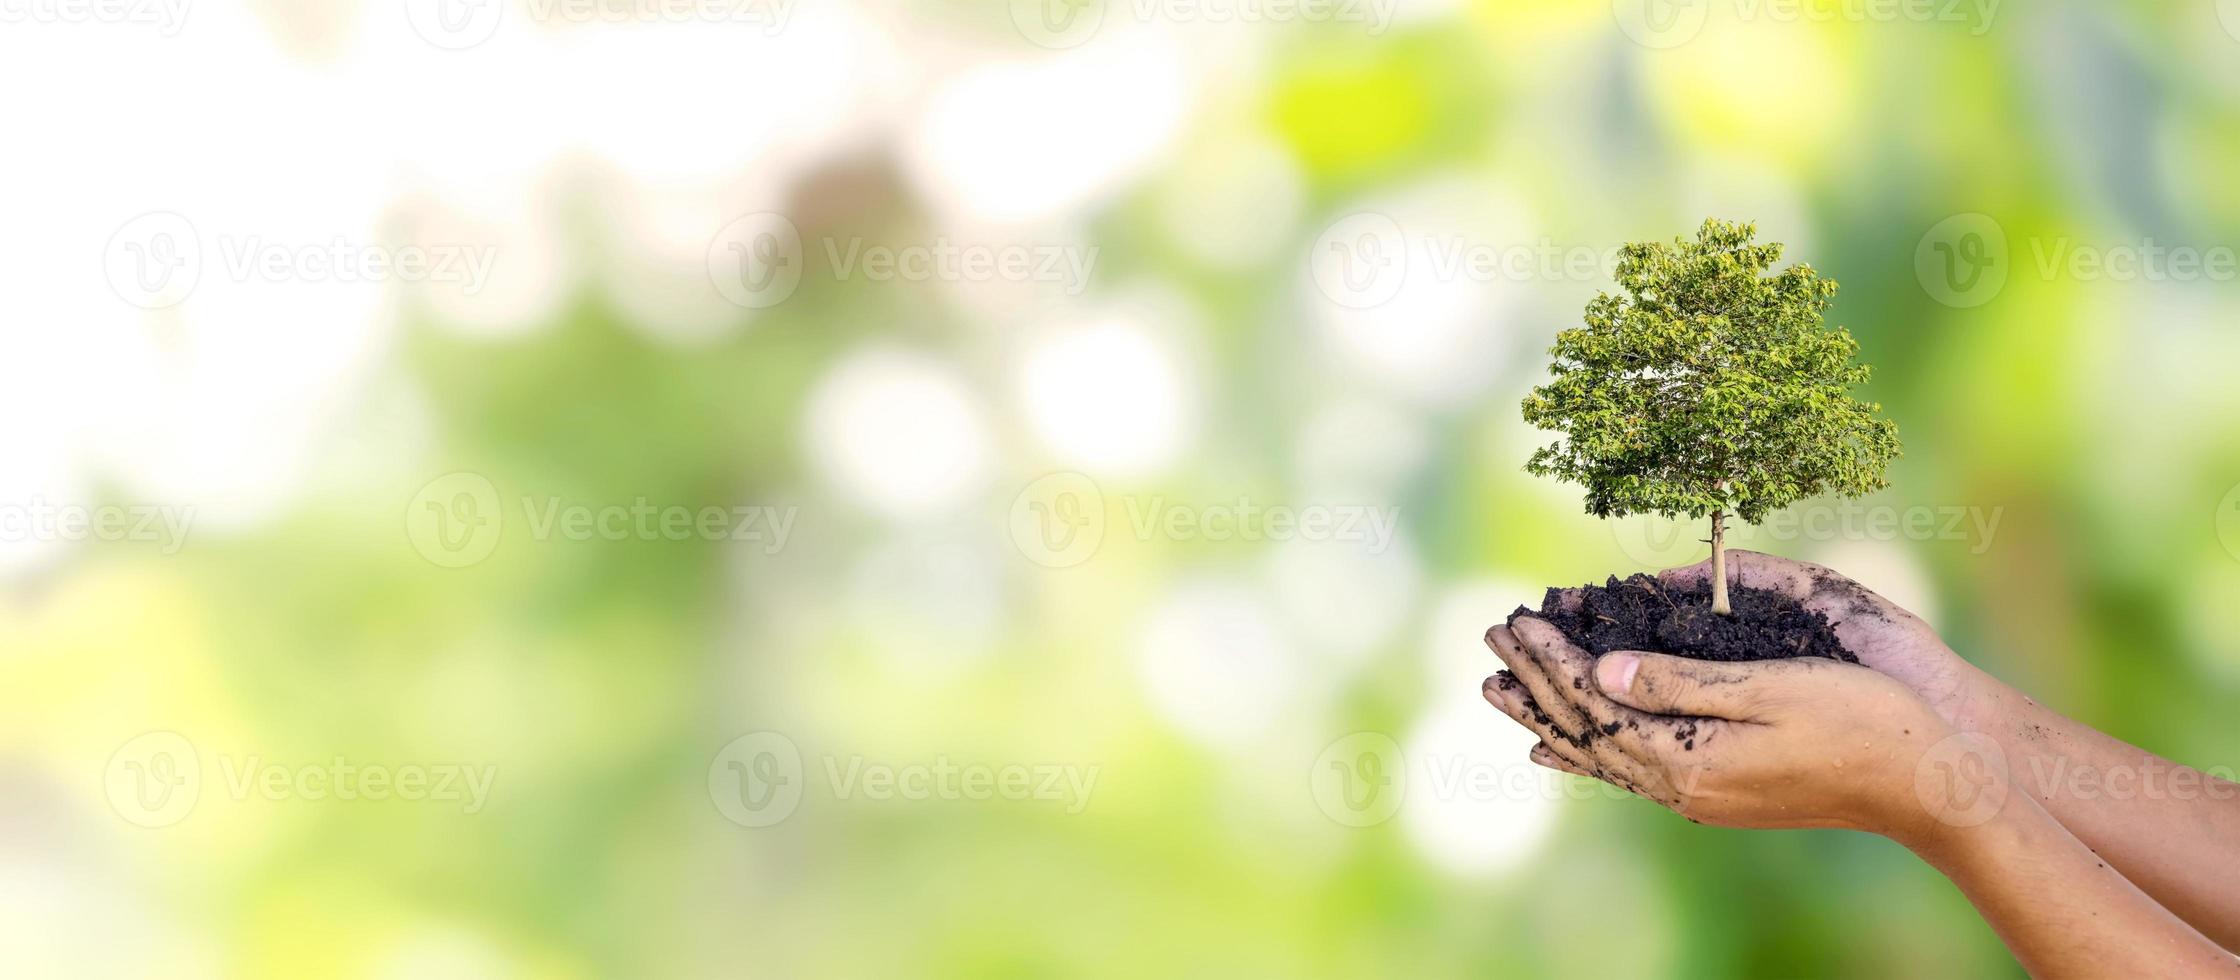 gli alberi sono piantati a terra nelle mani dell'uomo con sfondi verdi naturali, il concetto di crescita delle piante e la protezione dell'ambiente. foto